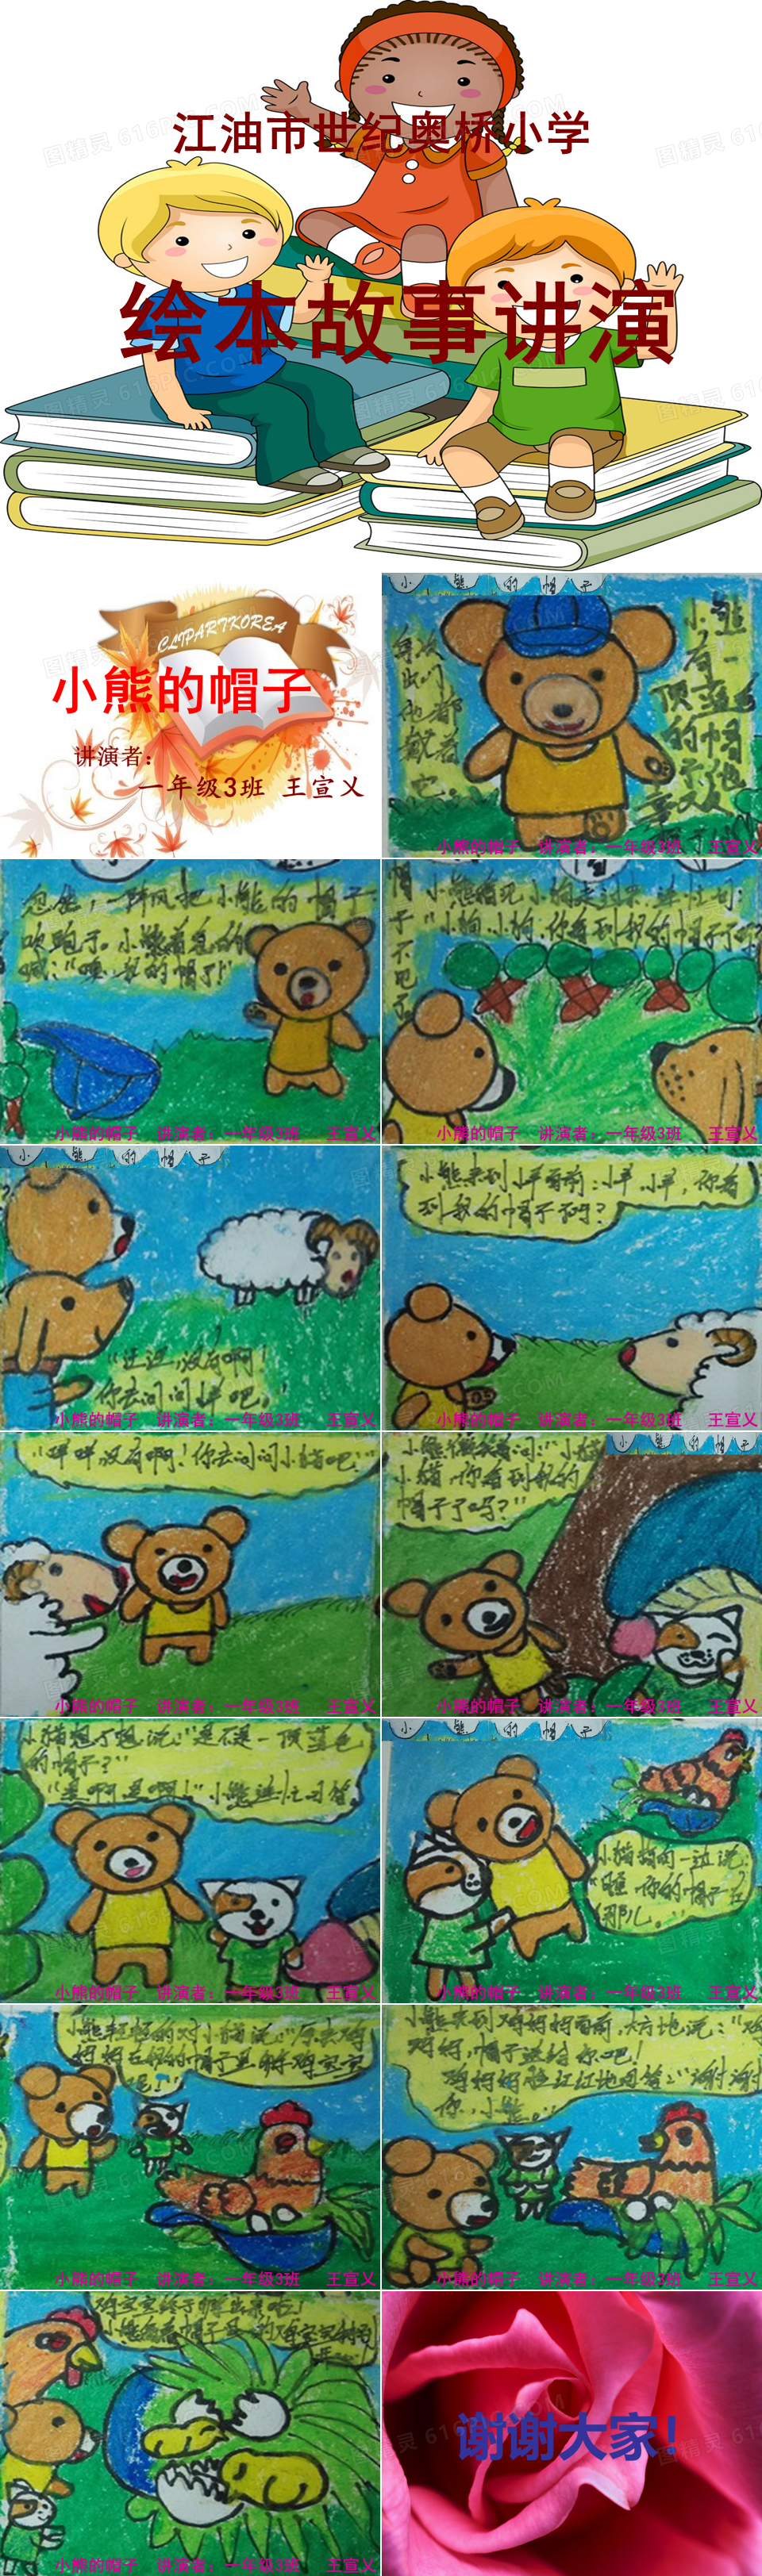 绘本故事《小熊的帽子》